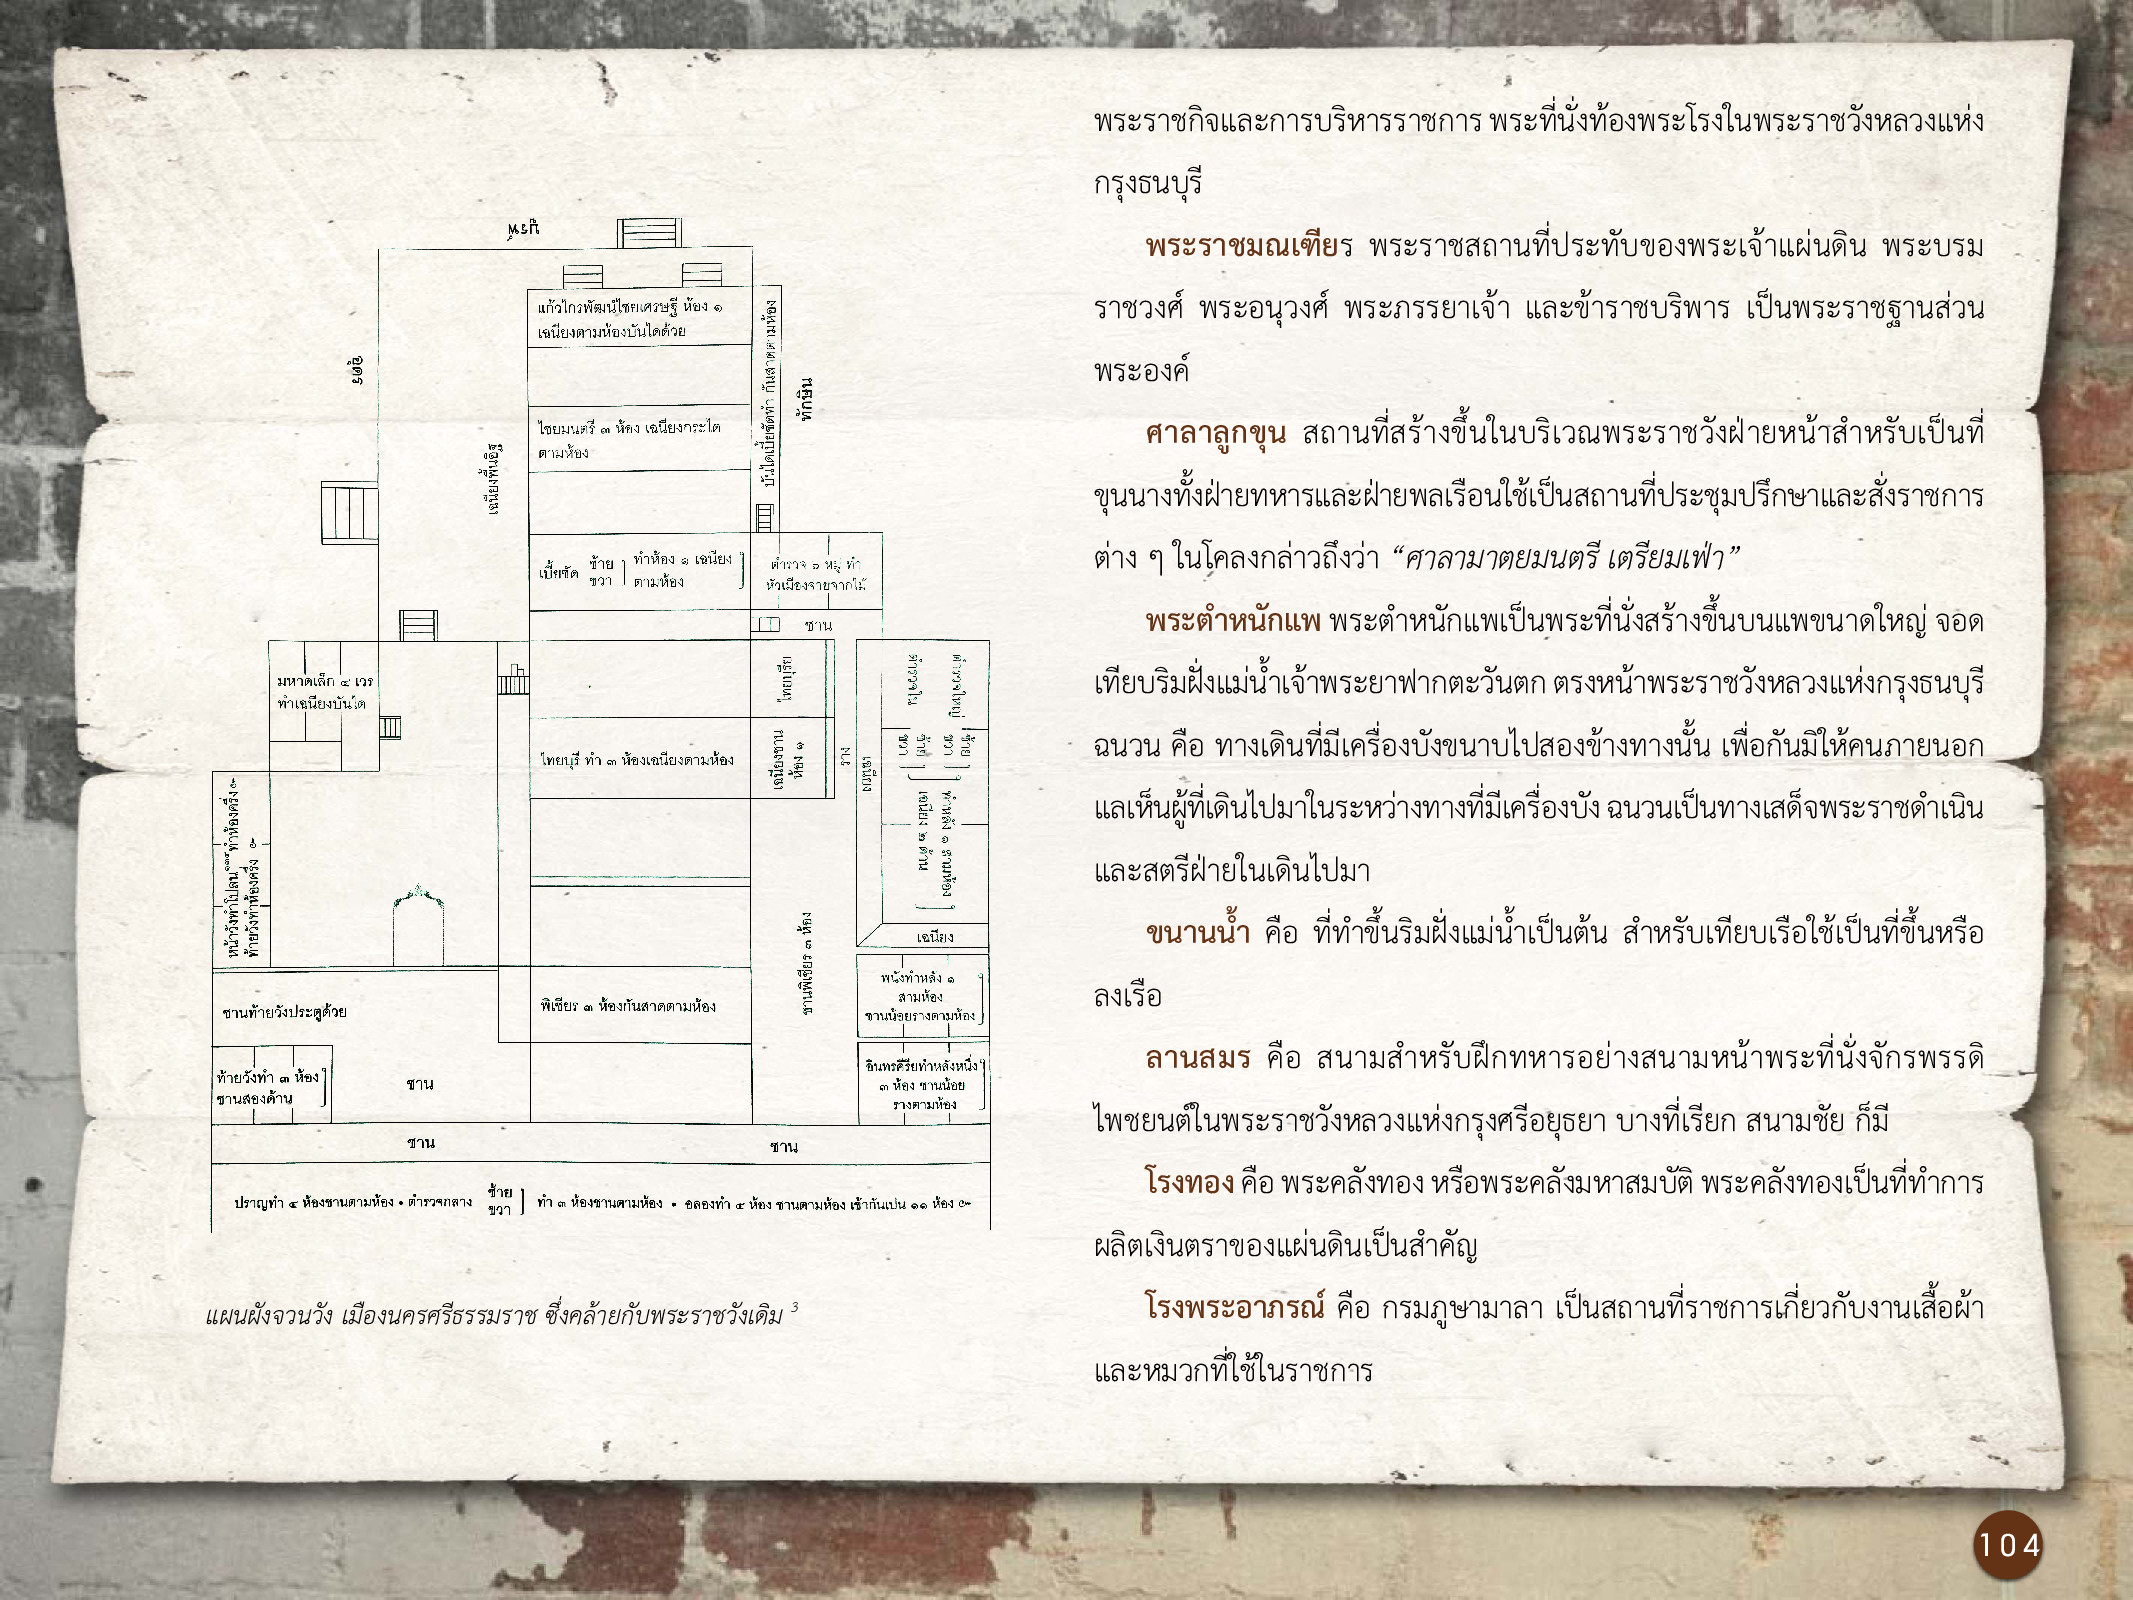 ศิลปกรรมกรุงธนบุรี ./images/encyclopedia/104.jpg